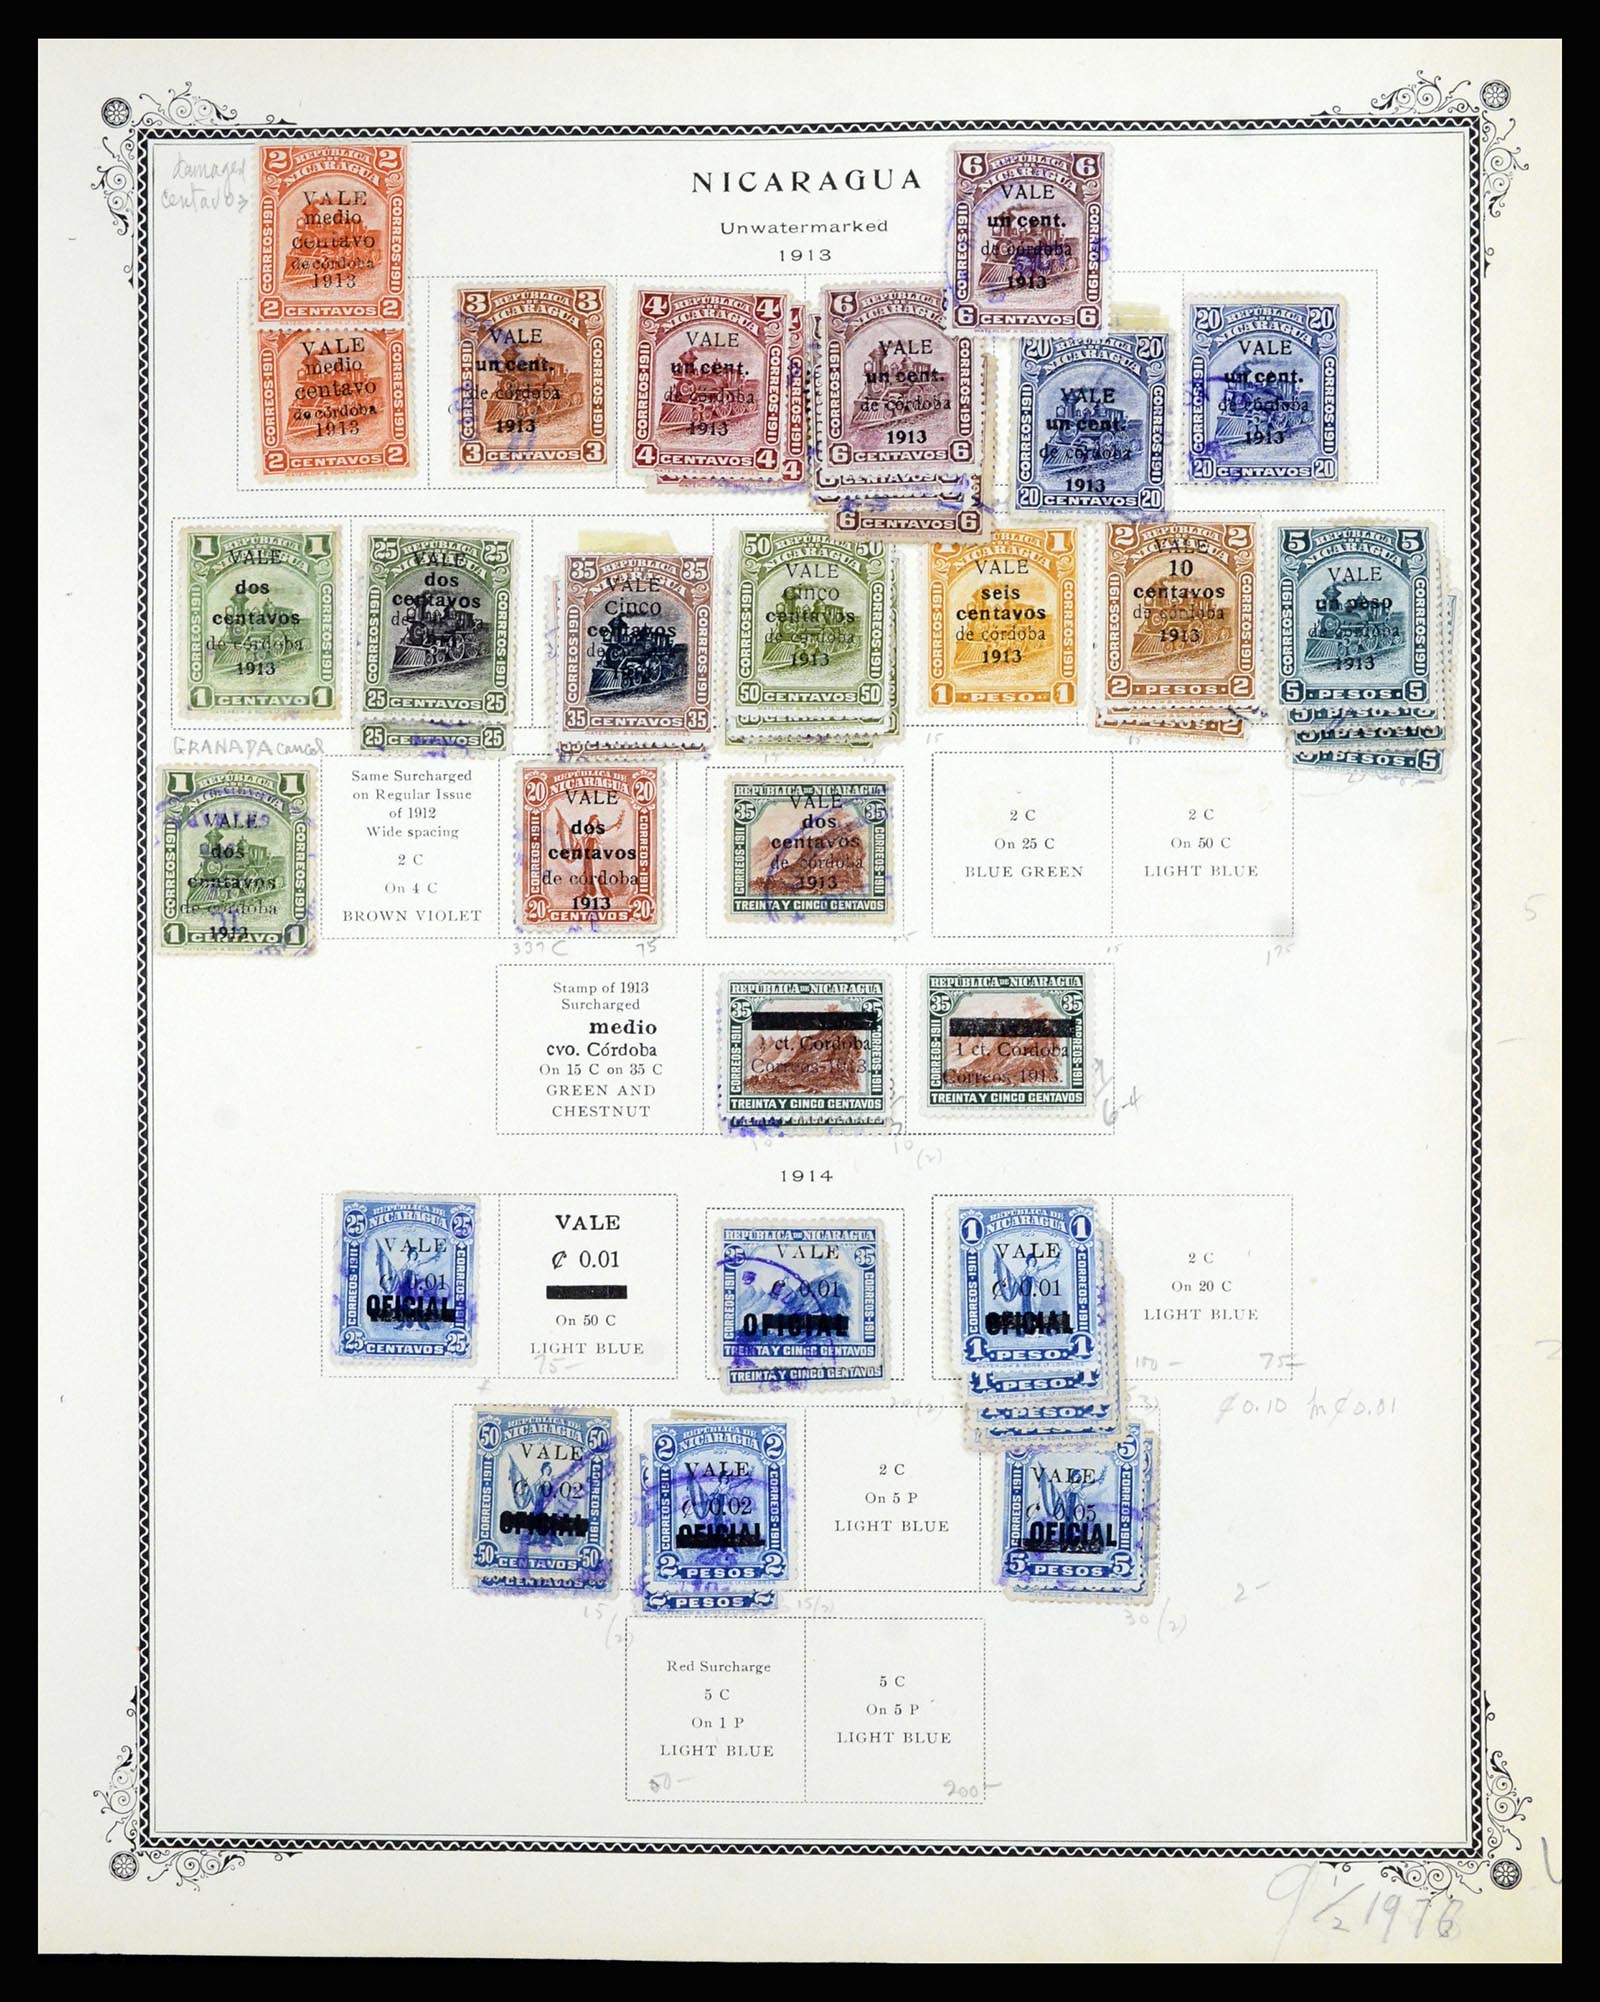 36494 030 - Stamp collection 36494 Nicaragua 1902-1945.